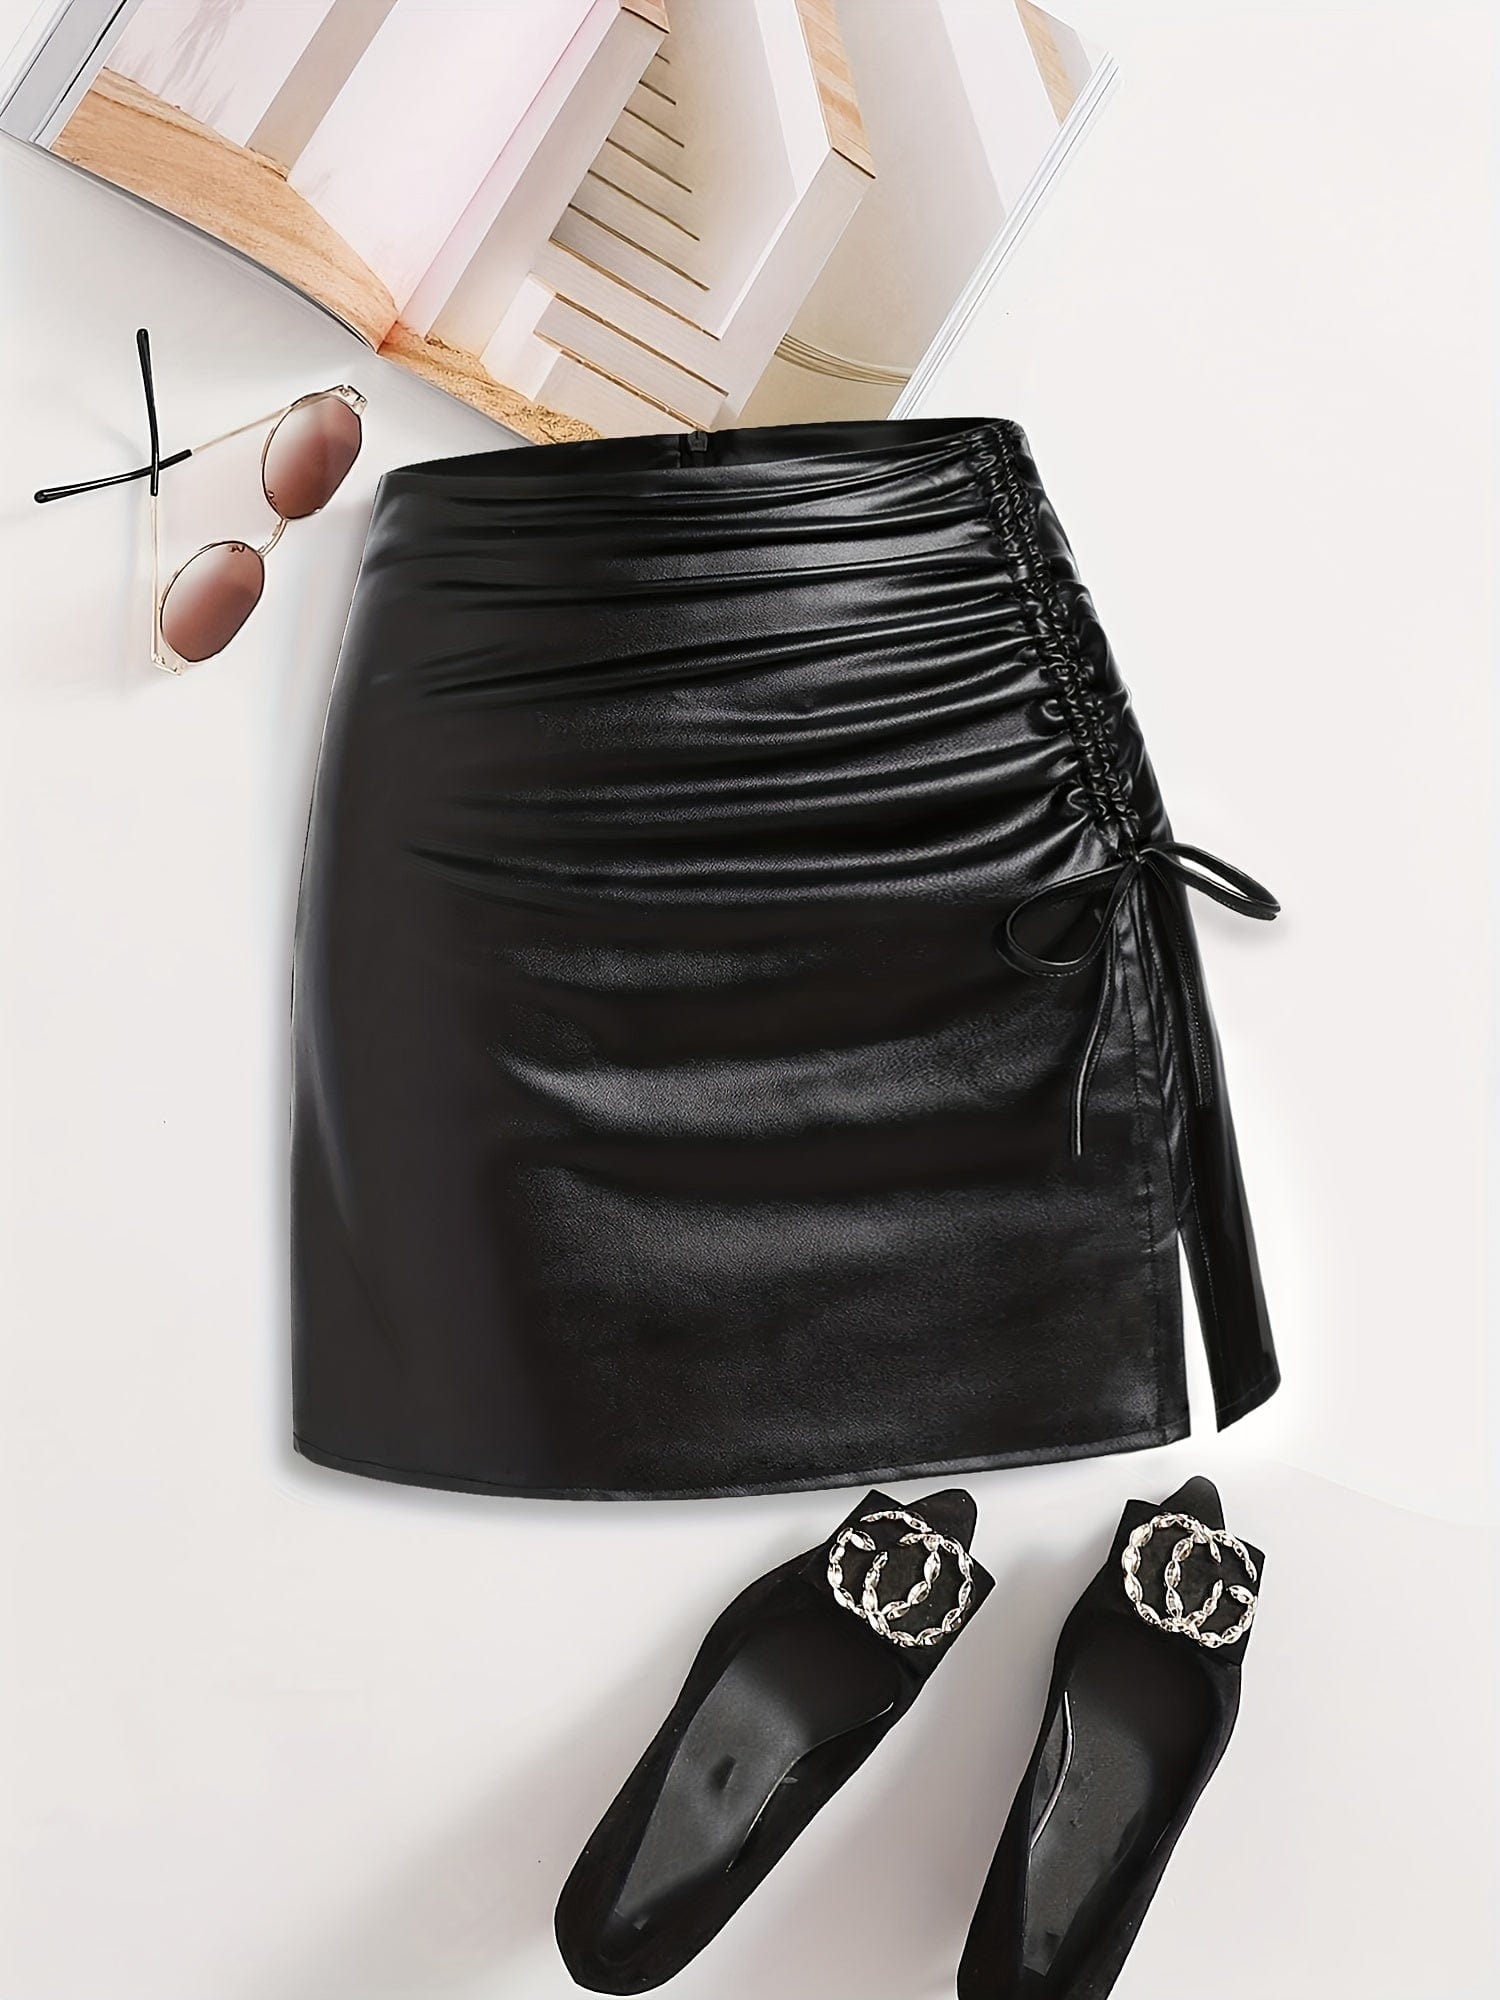 Sexy A-Line PU Leather Side Tie Drawstring Slit Mini Dress DRE231012135BLAXS(2) Black / XS(2)